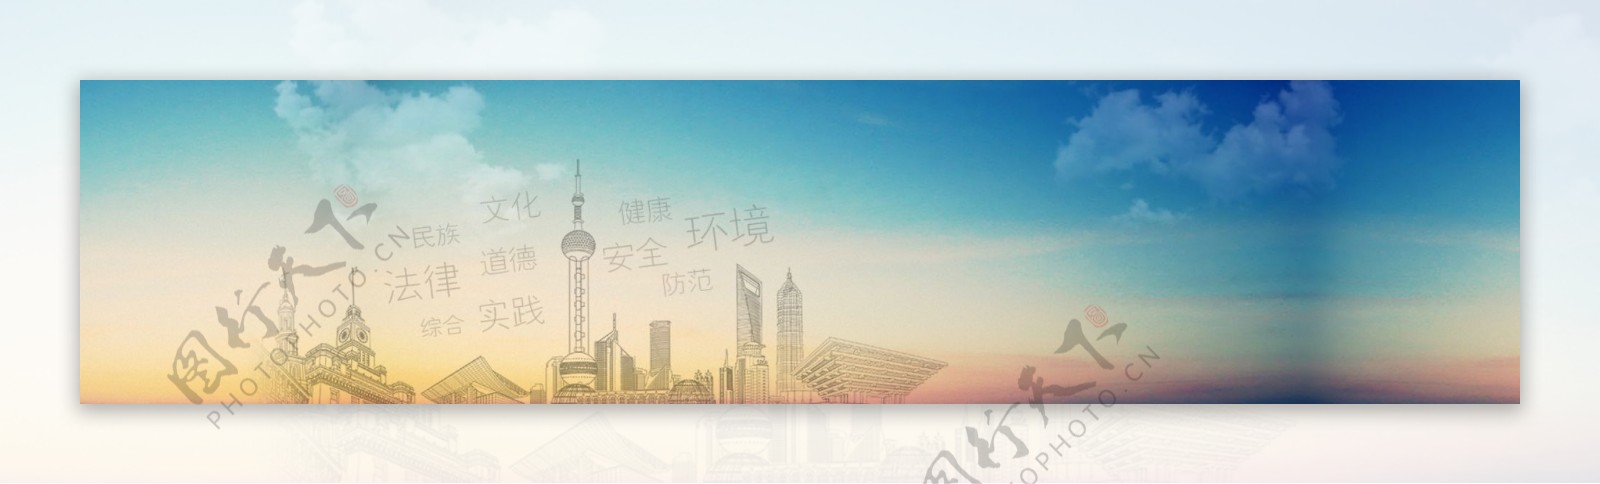 上海专题教育banner